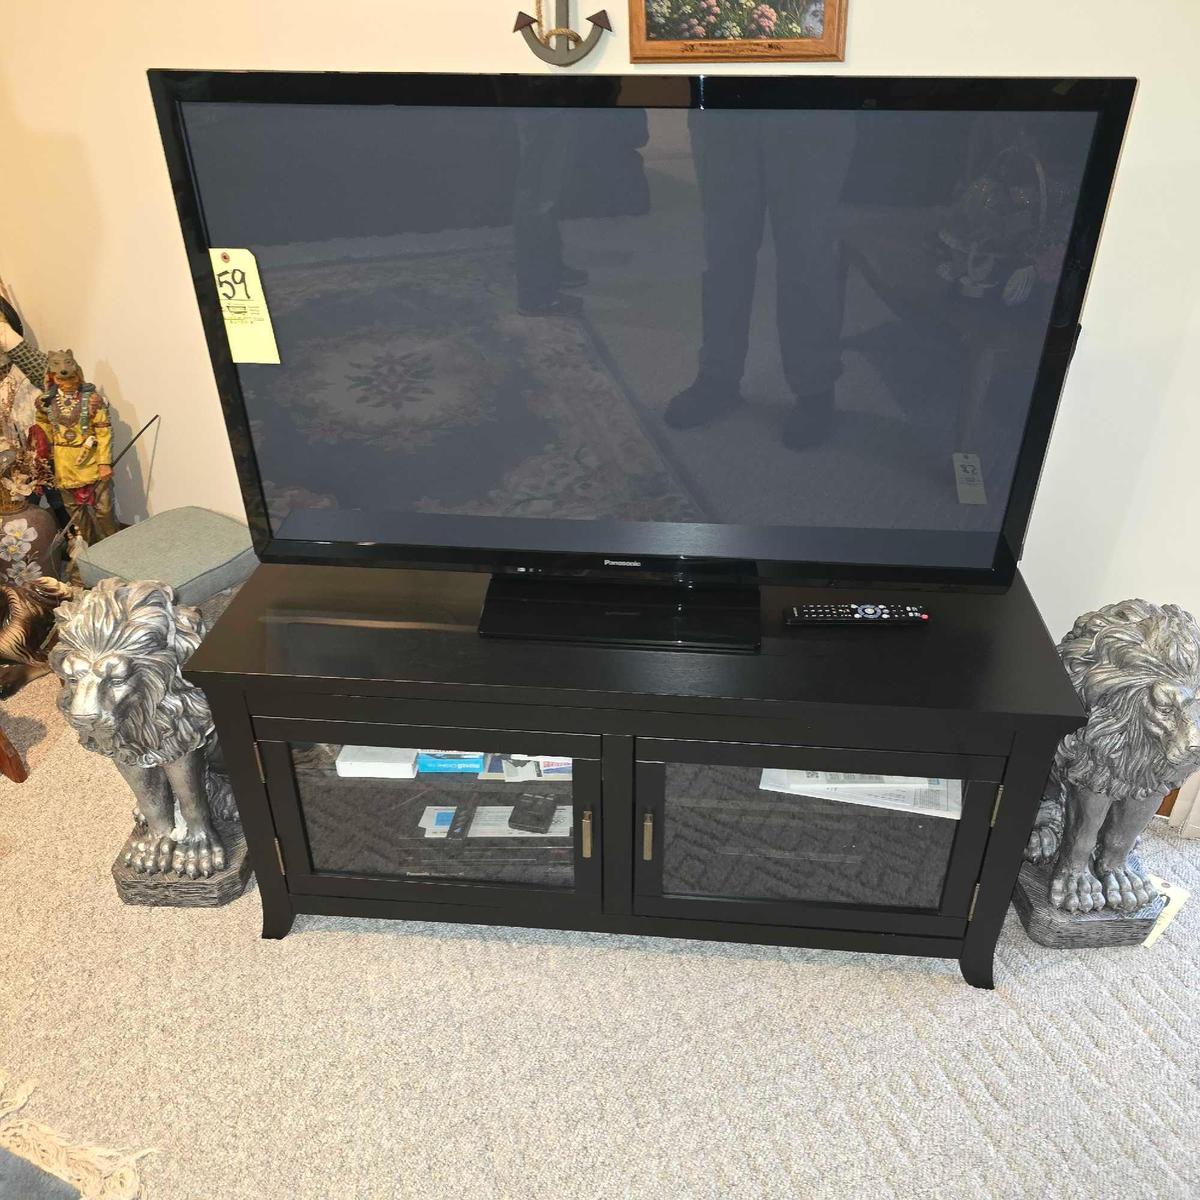 2013 Panasonic 48in Flatscreen TV with Stand